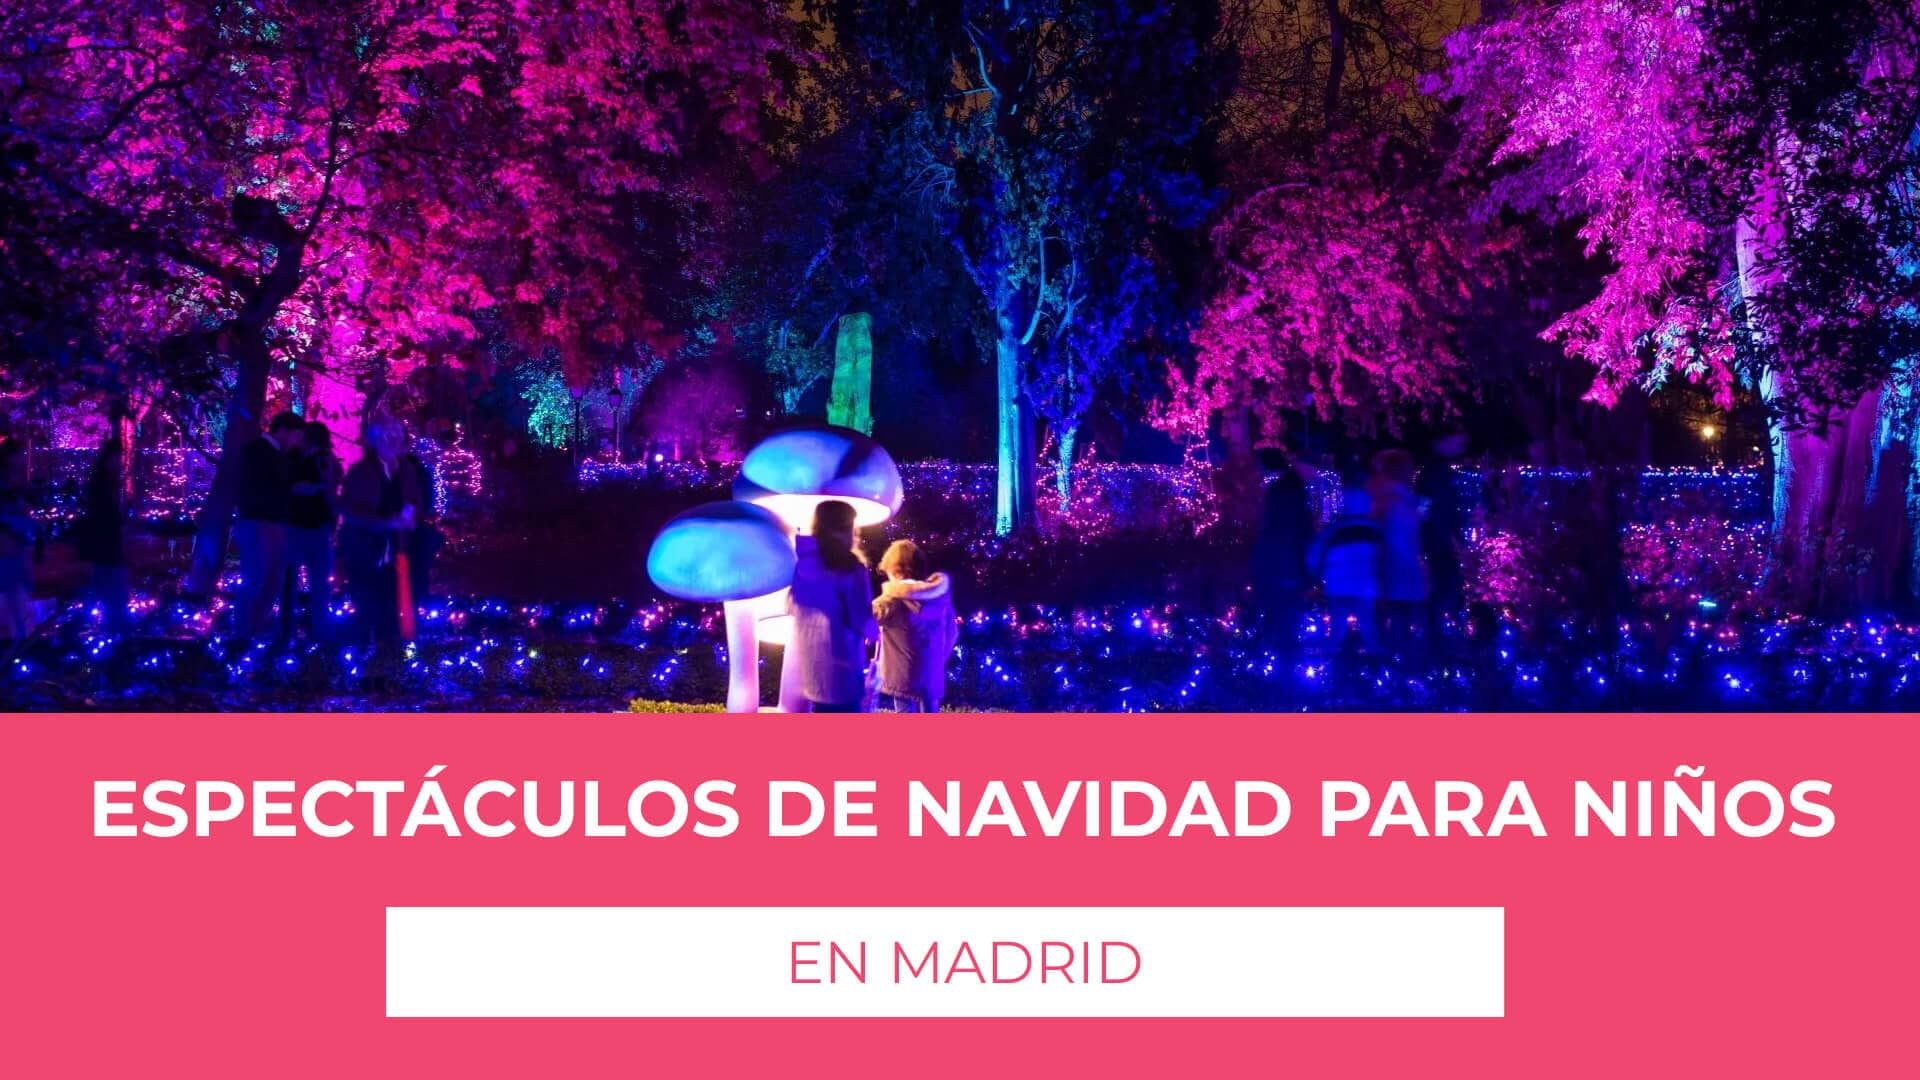 Descubre información sobre los Espectáculos de Navidad para niños en Madrid - Lista de algunos de los espectaculos disponibles en la ciudad de Madrid en las fechas navideñas